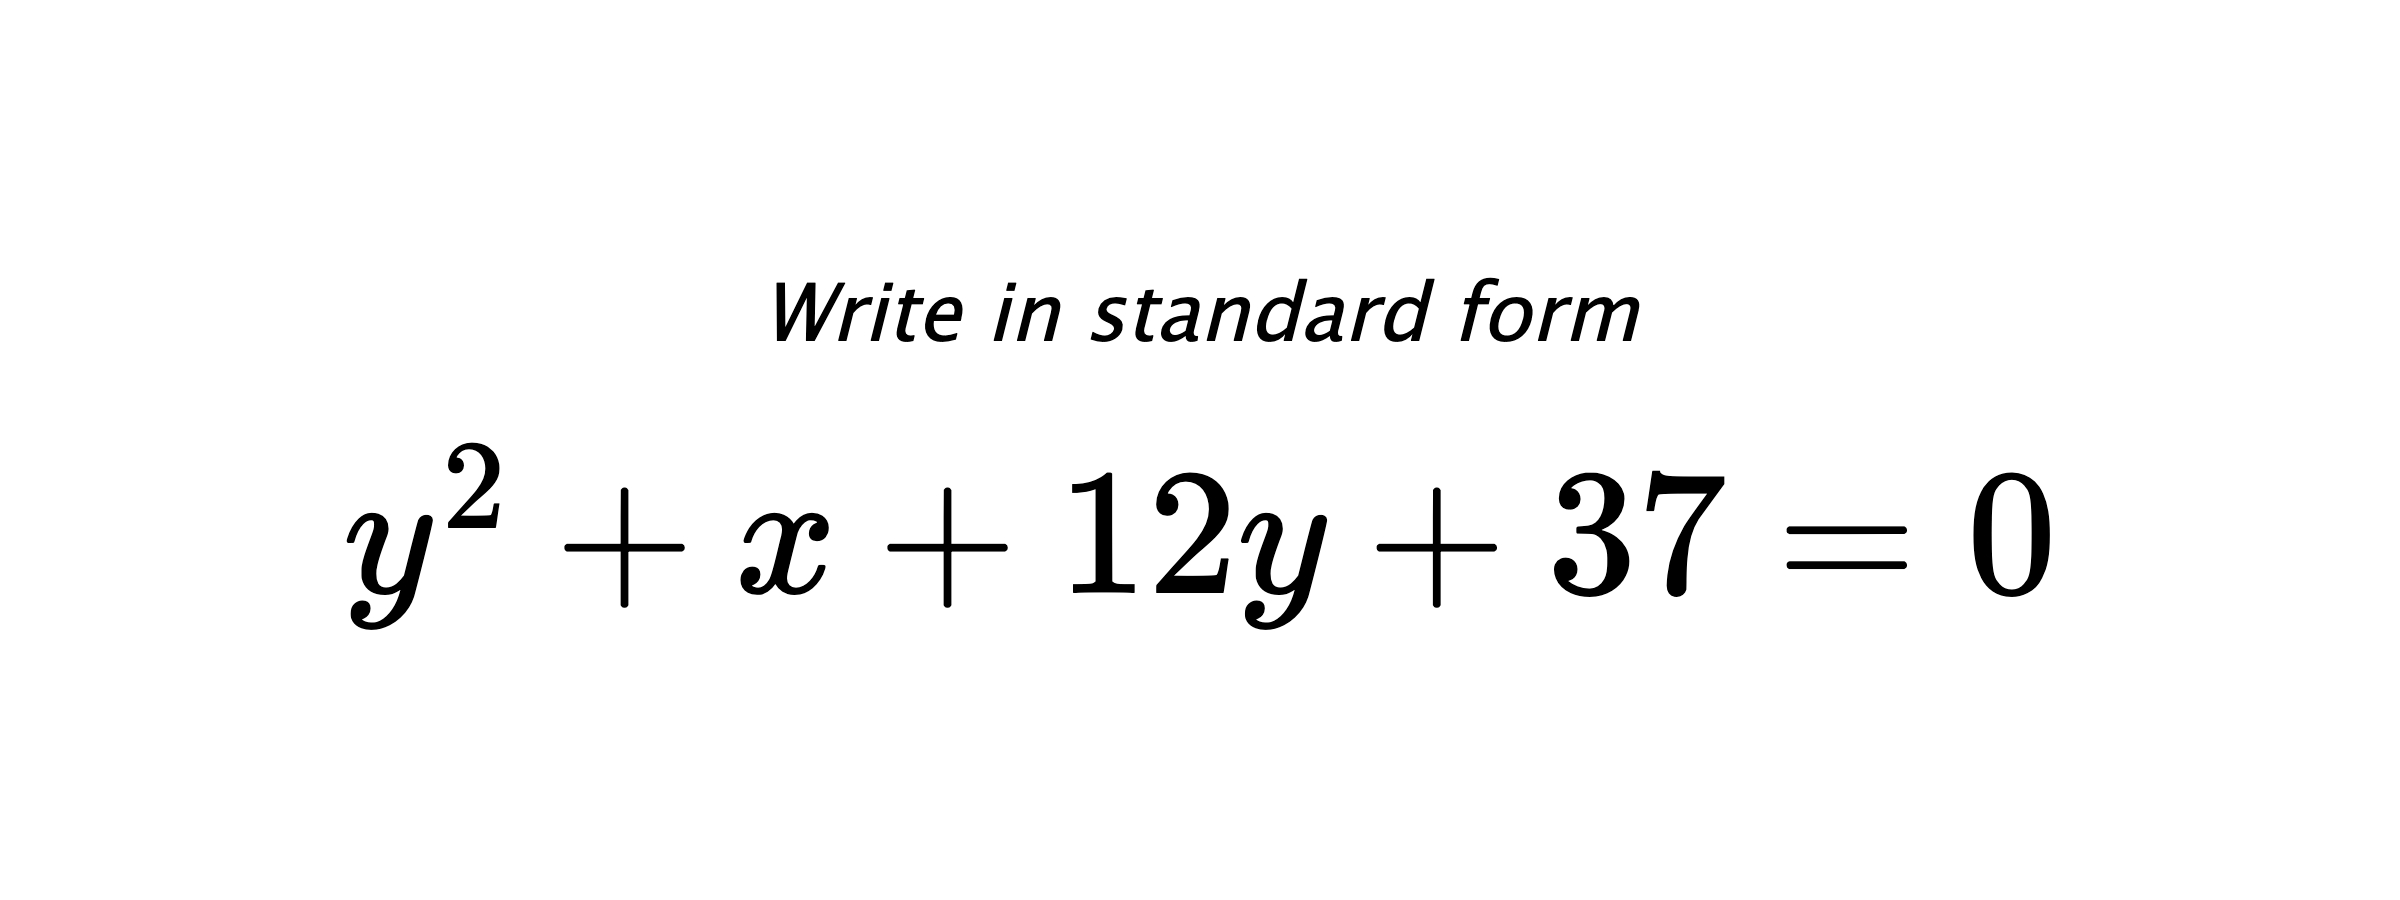 Write in standard form $ y^{2}+x+12y+37=0 $